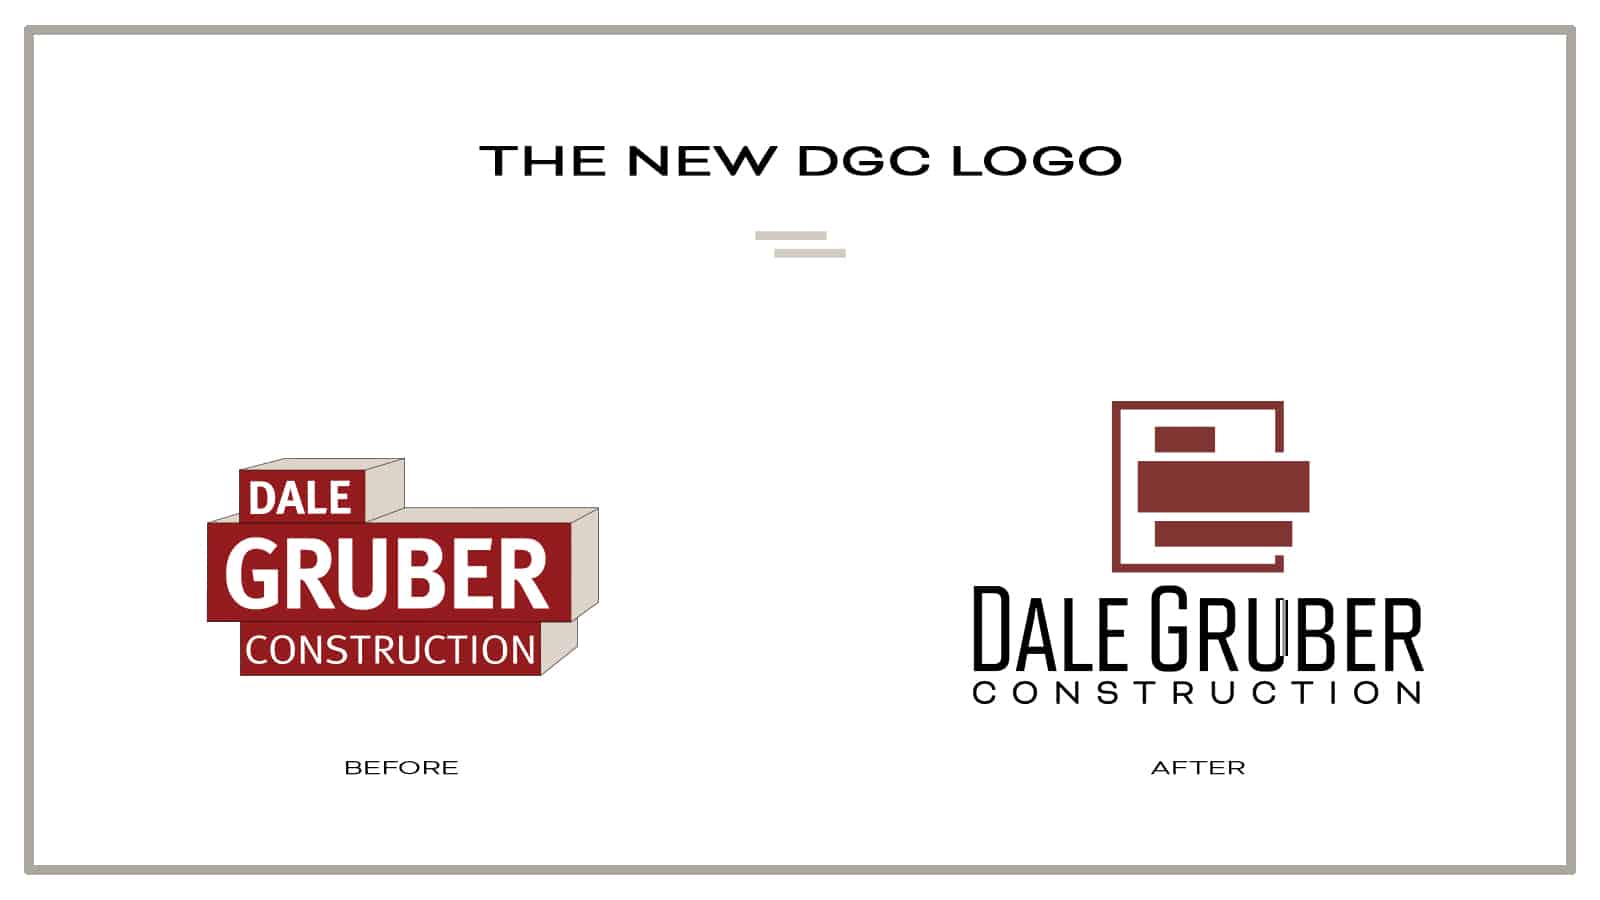 Introducing the New DGC Logo!